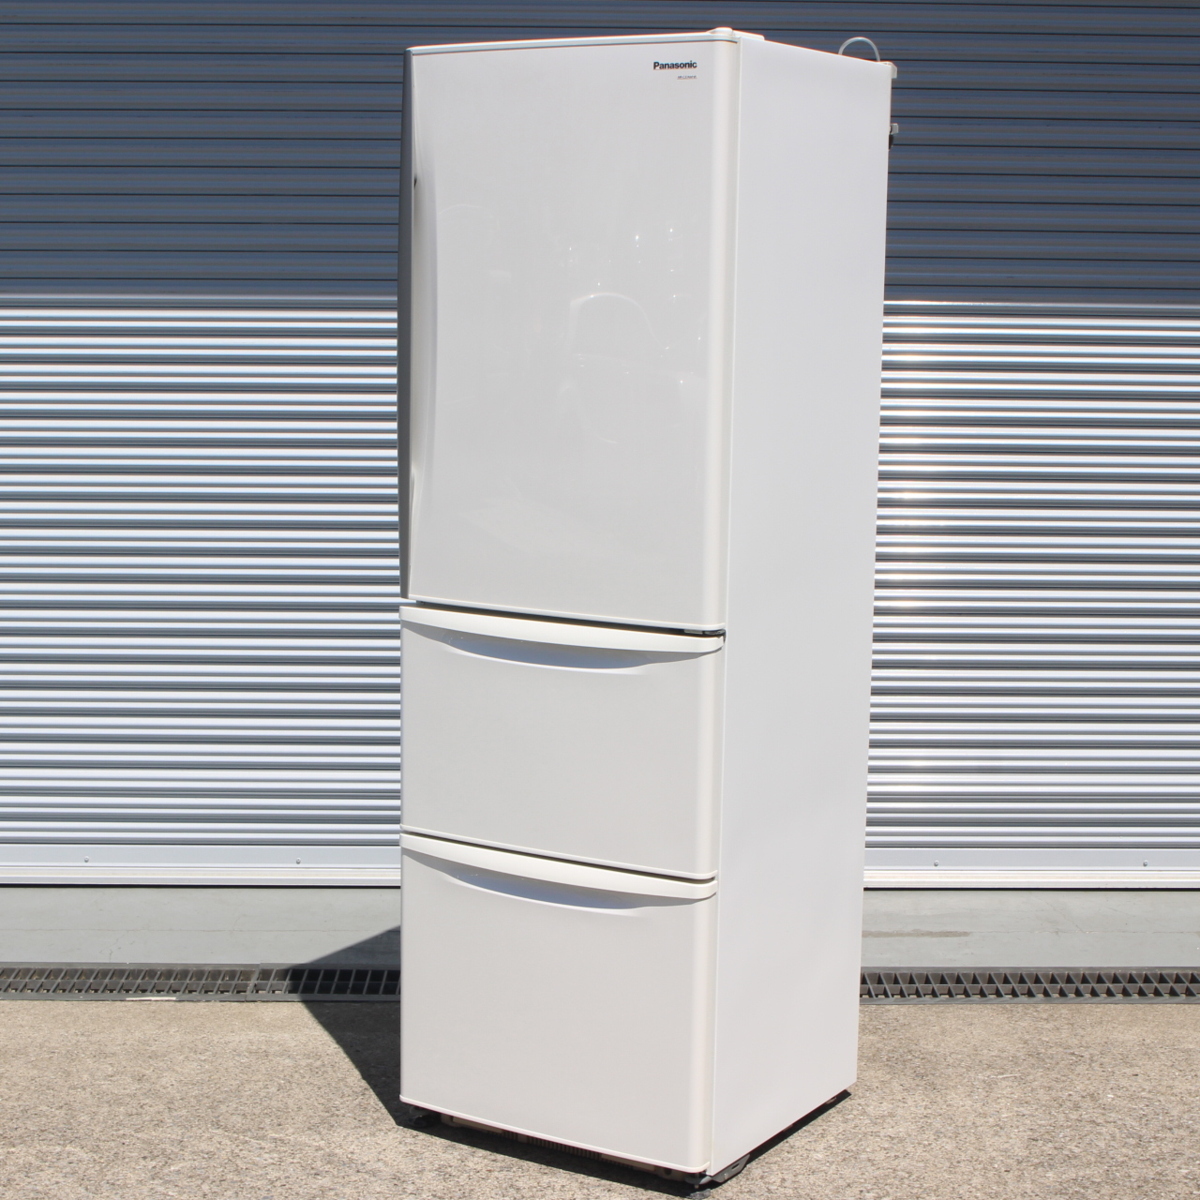 2012年製 Panasonic 冷凍冷蔵庫「NR-C37AM-S」365L - キッチン家電